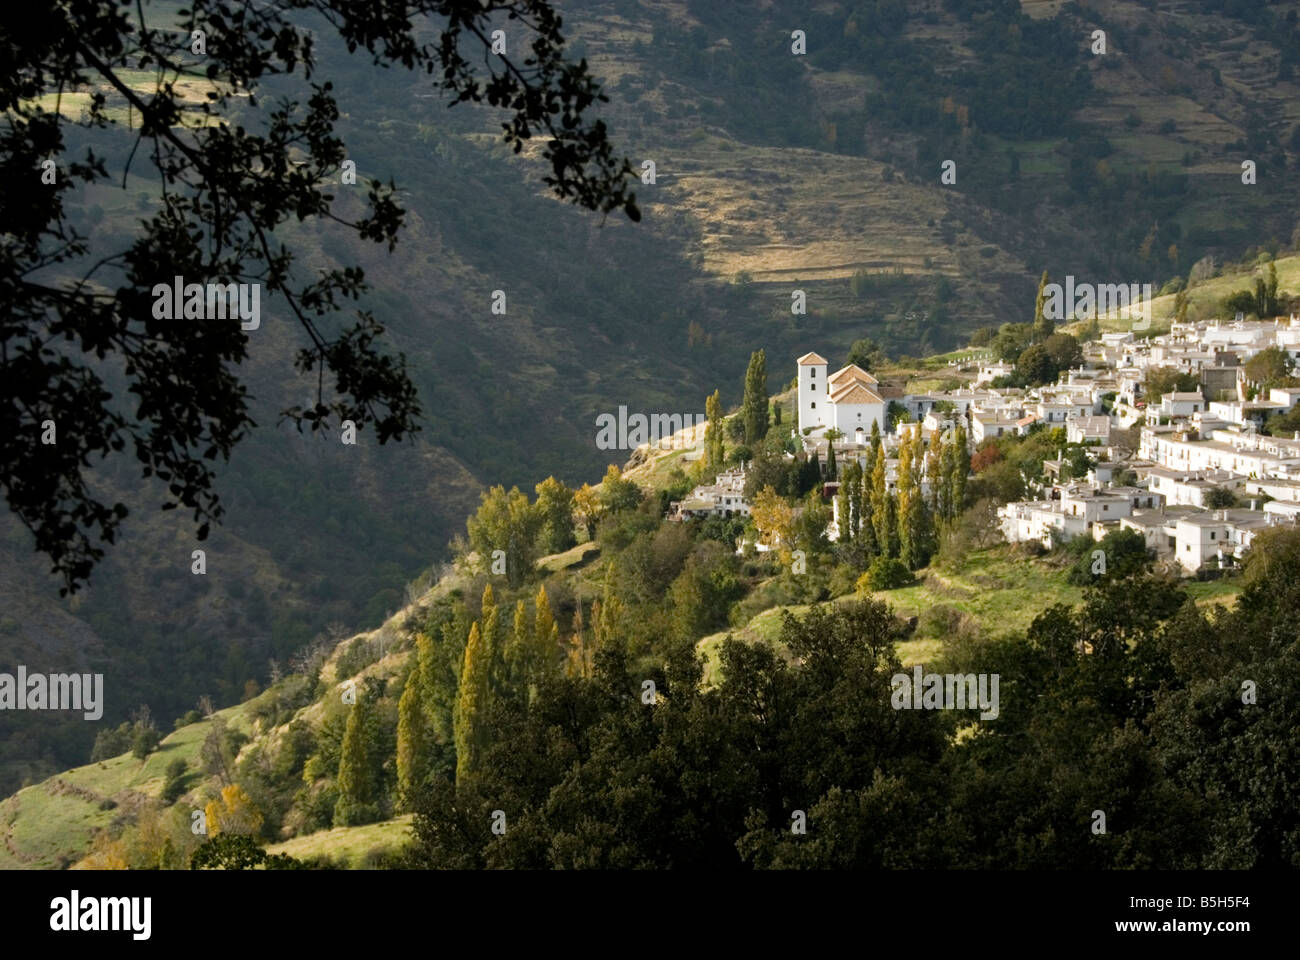 Village andalou blanchi de Bubion dans la vallée de Poqueira Sierra Nevada Espagne Alpujarra Banque D'Images